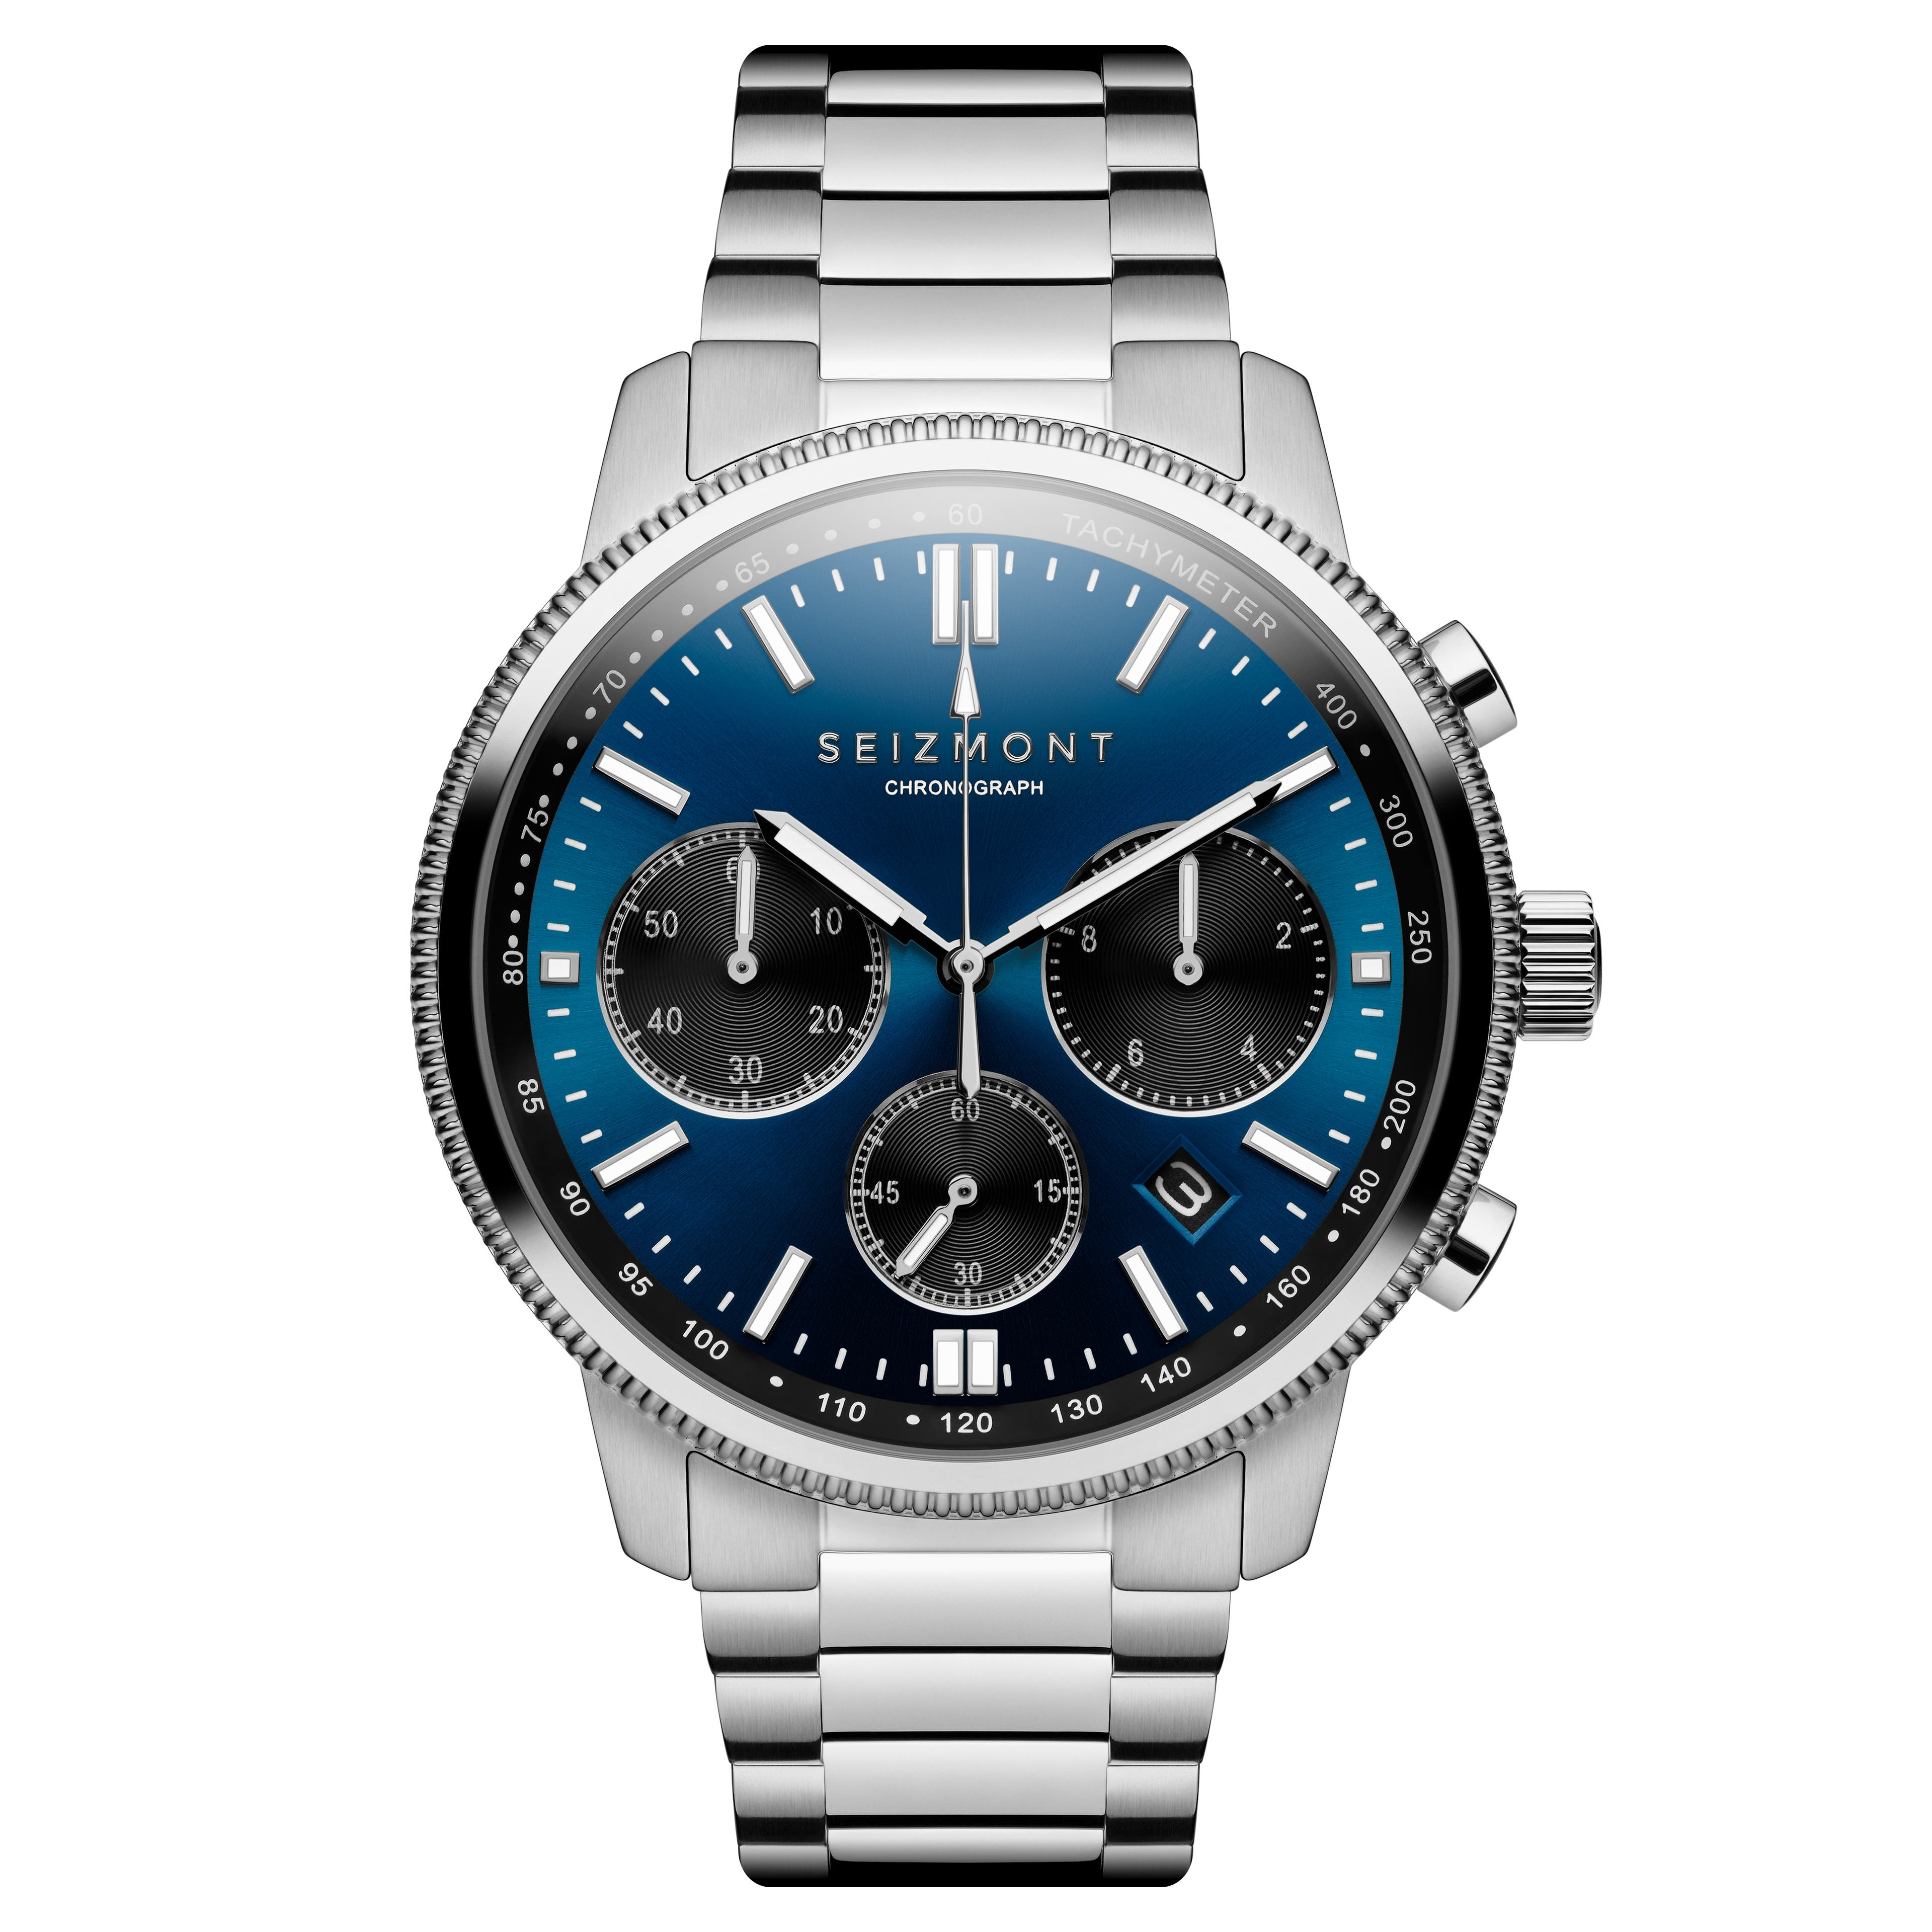 Chronum | Srebrzysty zegarek chronograf ze stali nierdzewnej z niebieską tarczą